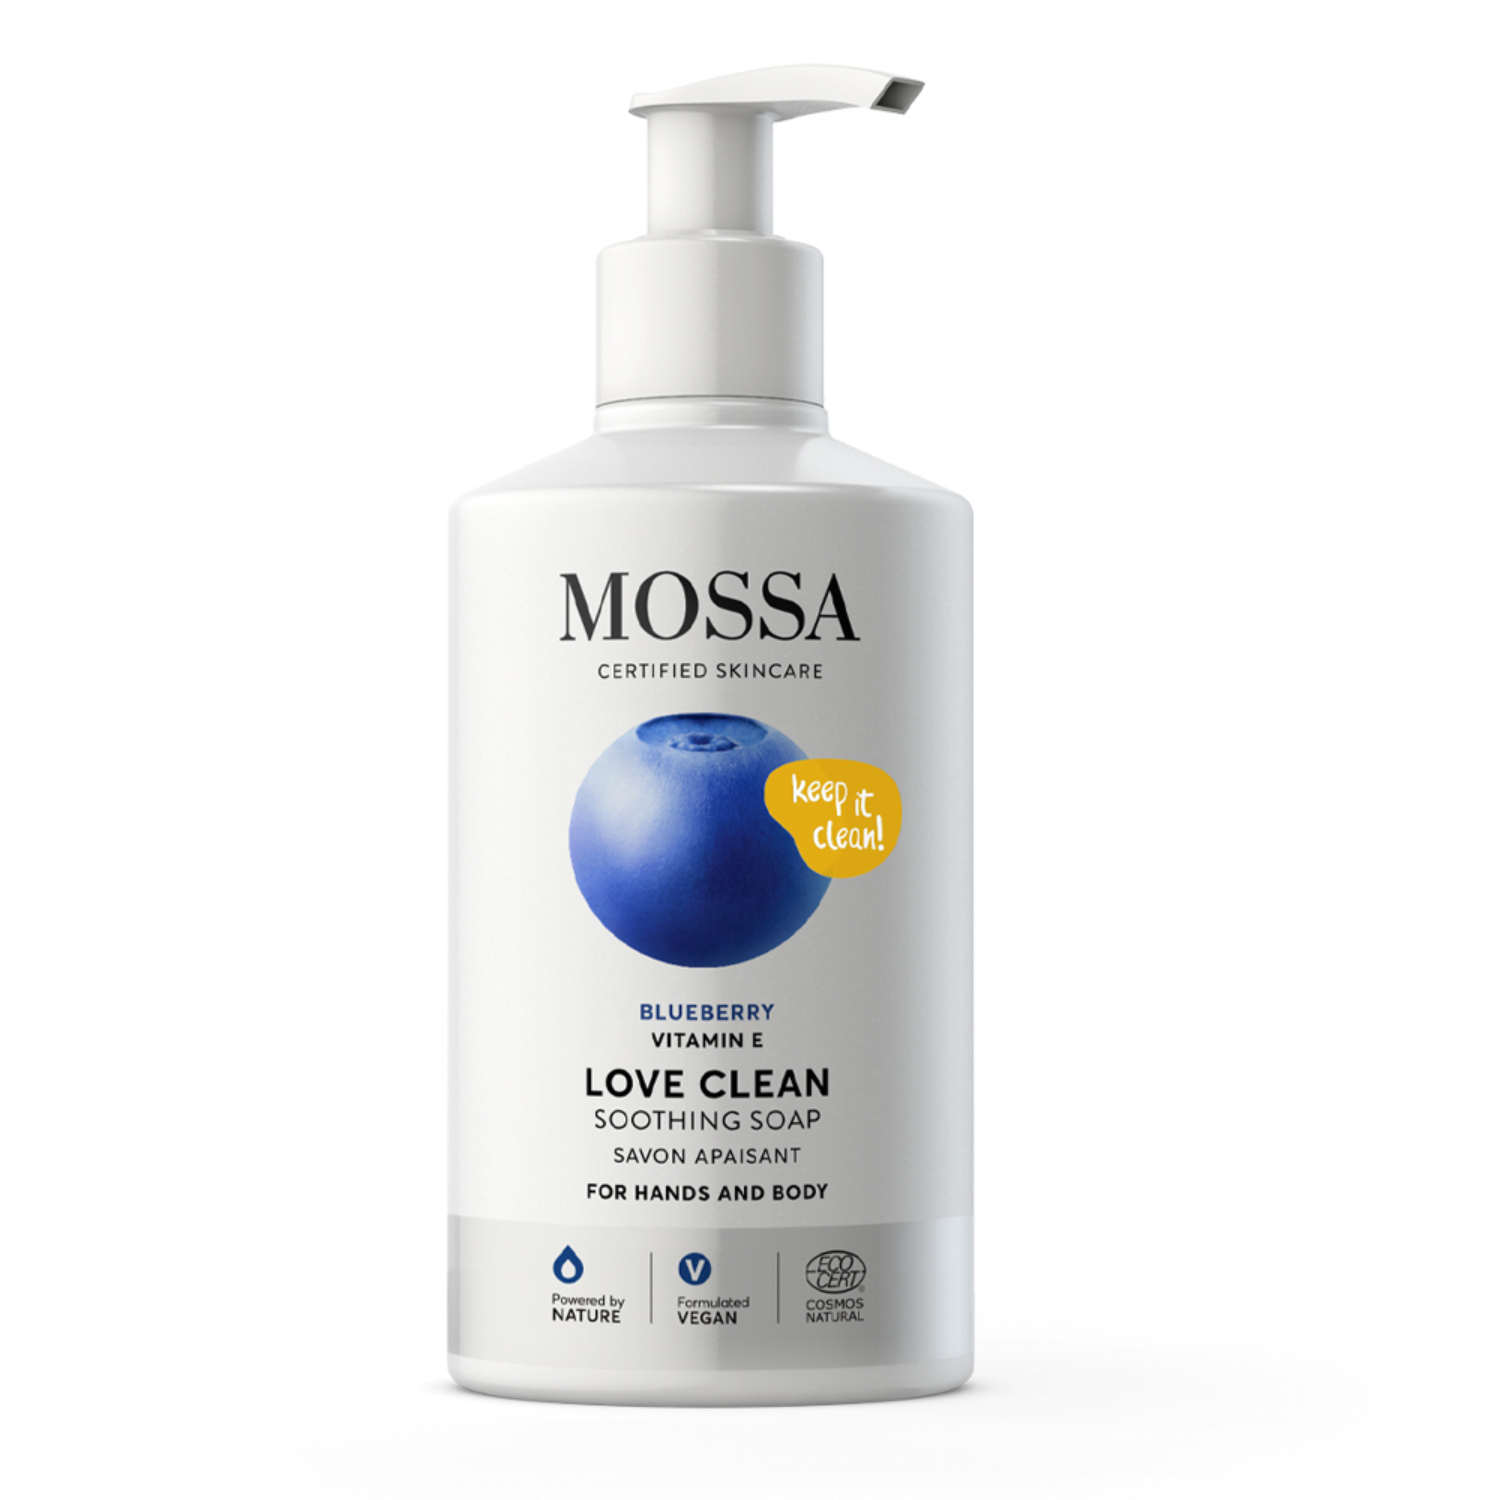 A7303-mossa-love-clean-nyugtato-szappan-testre-es-kezre